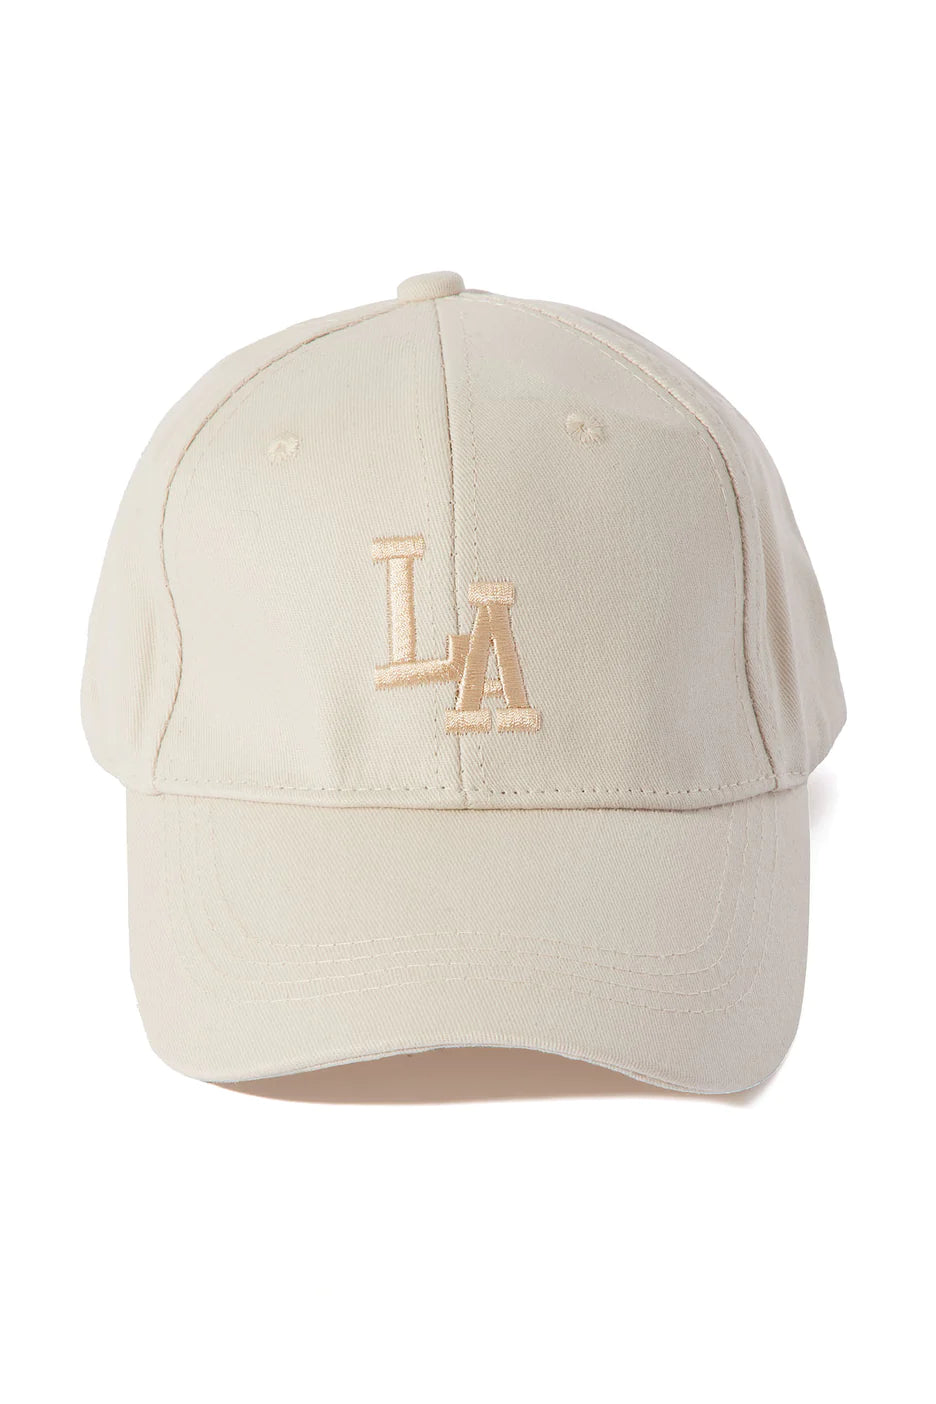 Fashionnova LA Representing Baseball Hat